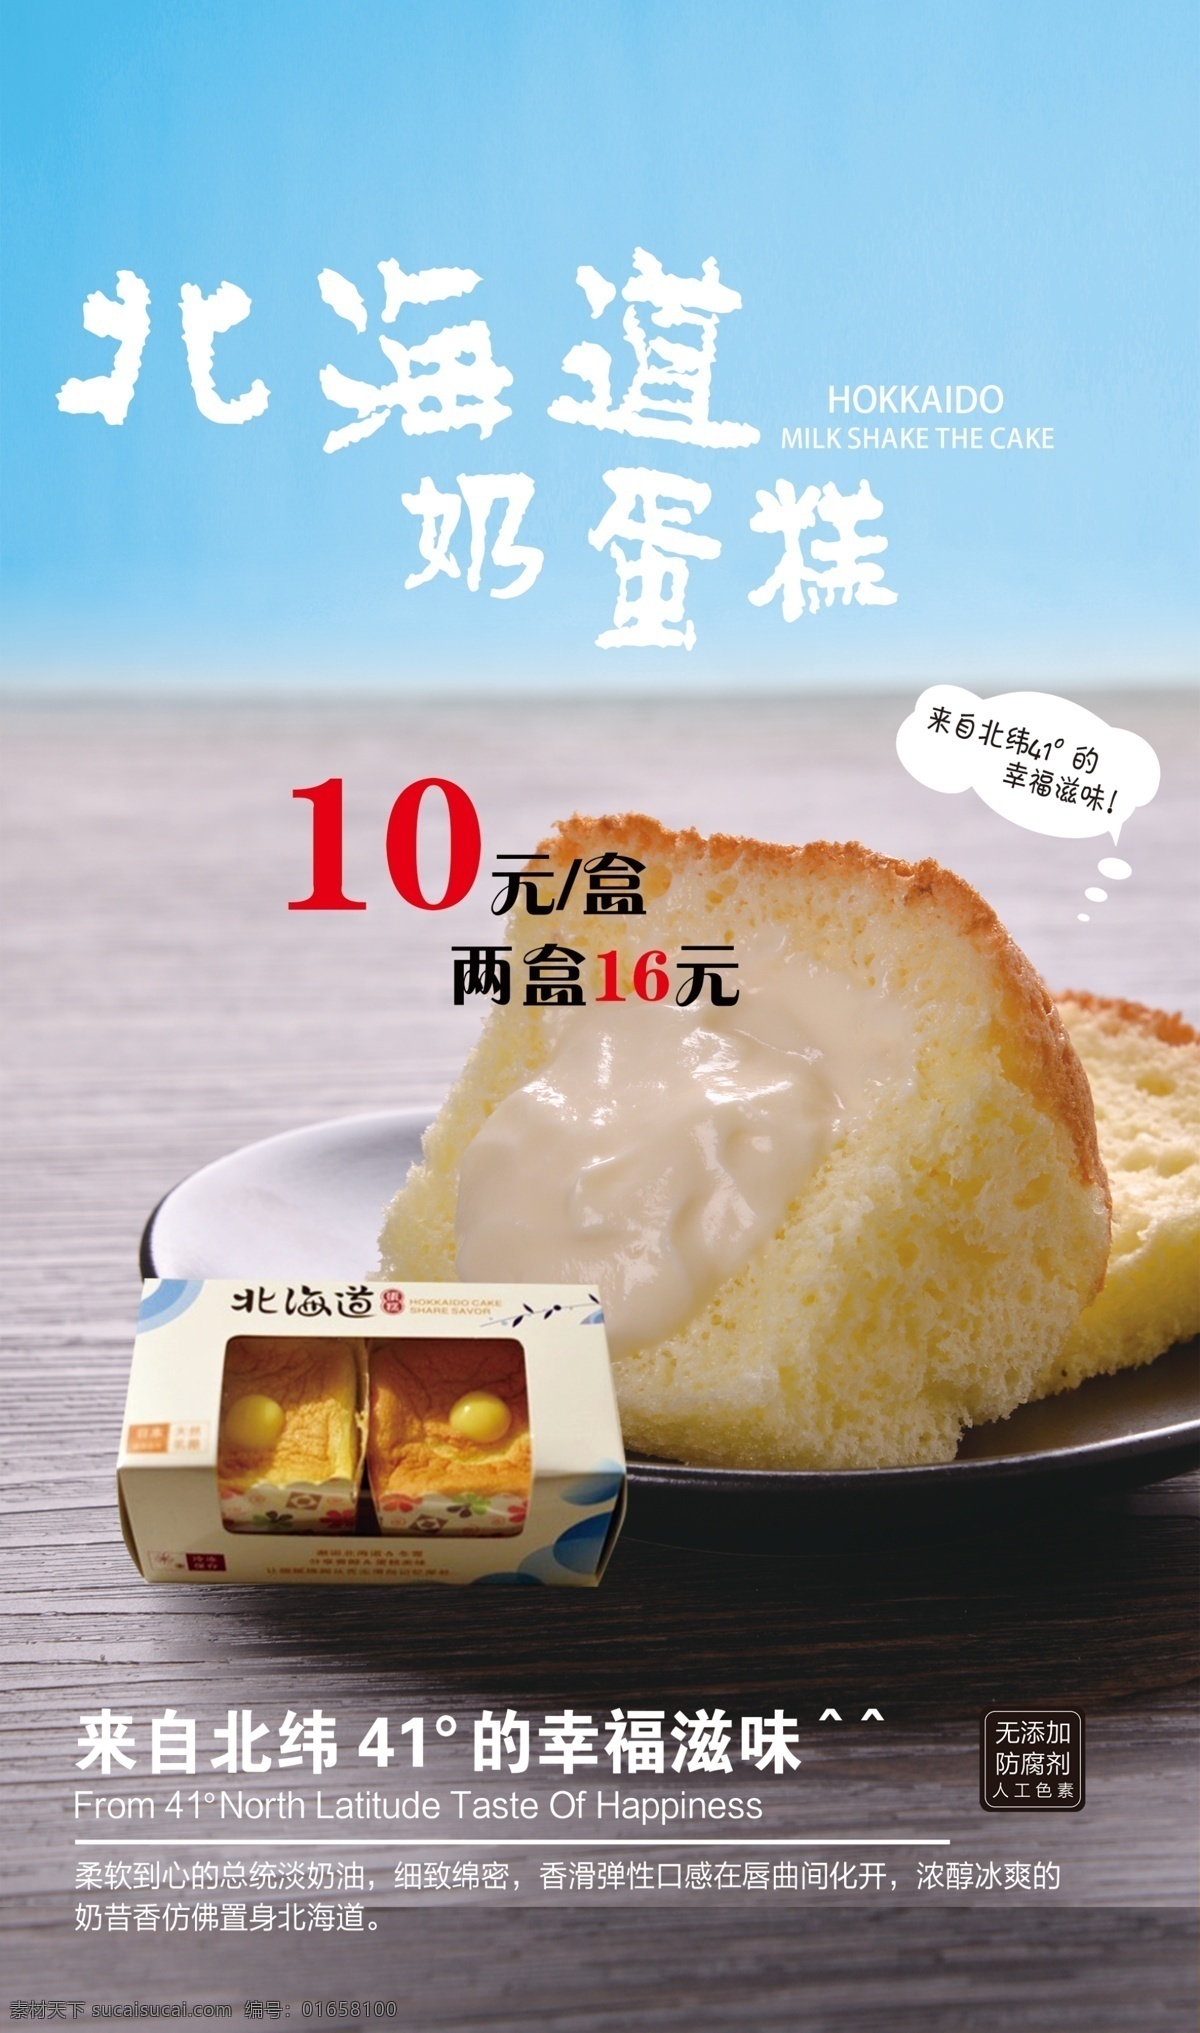 北海道海报 北海道 蛋糕 北海道蛋糕